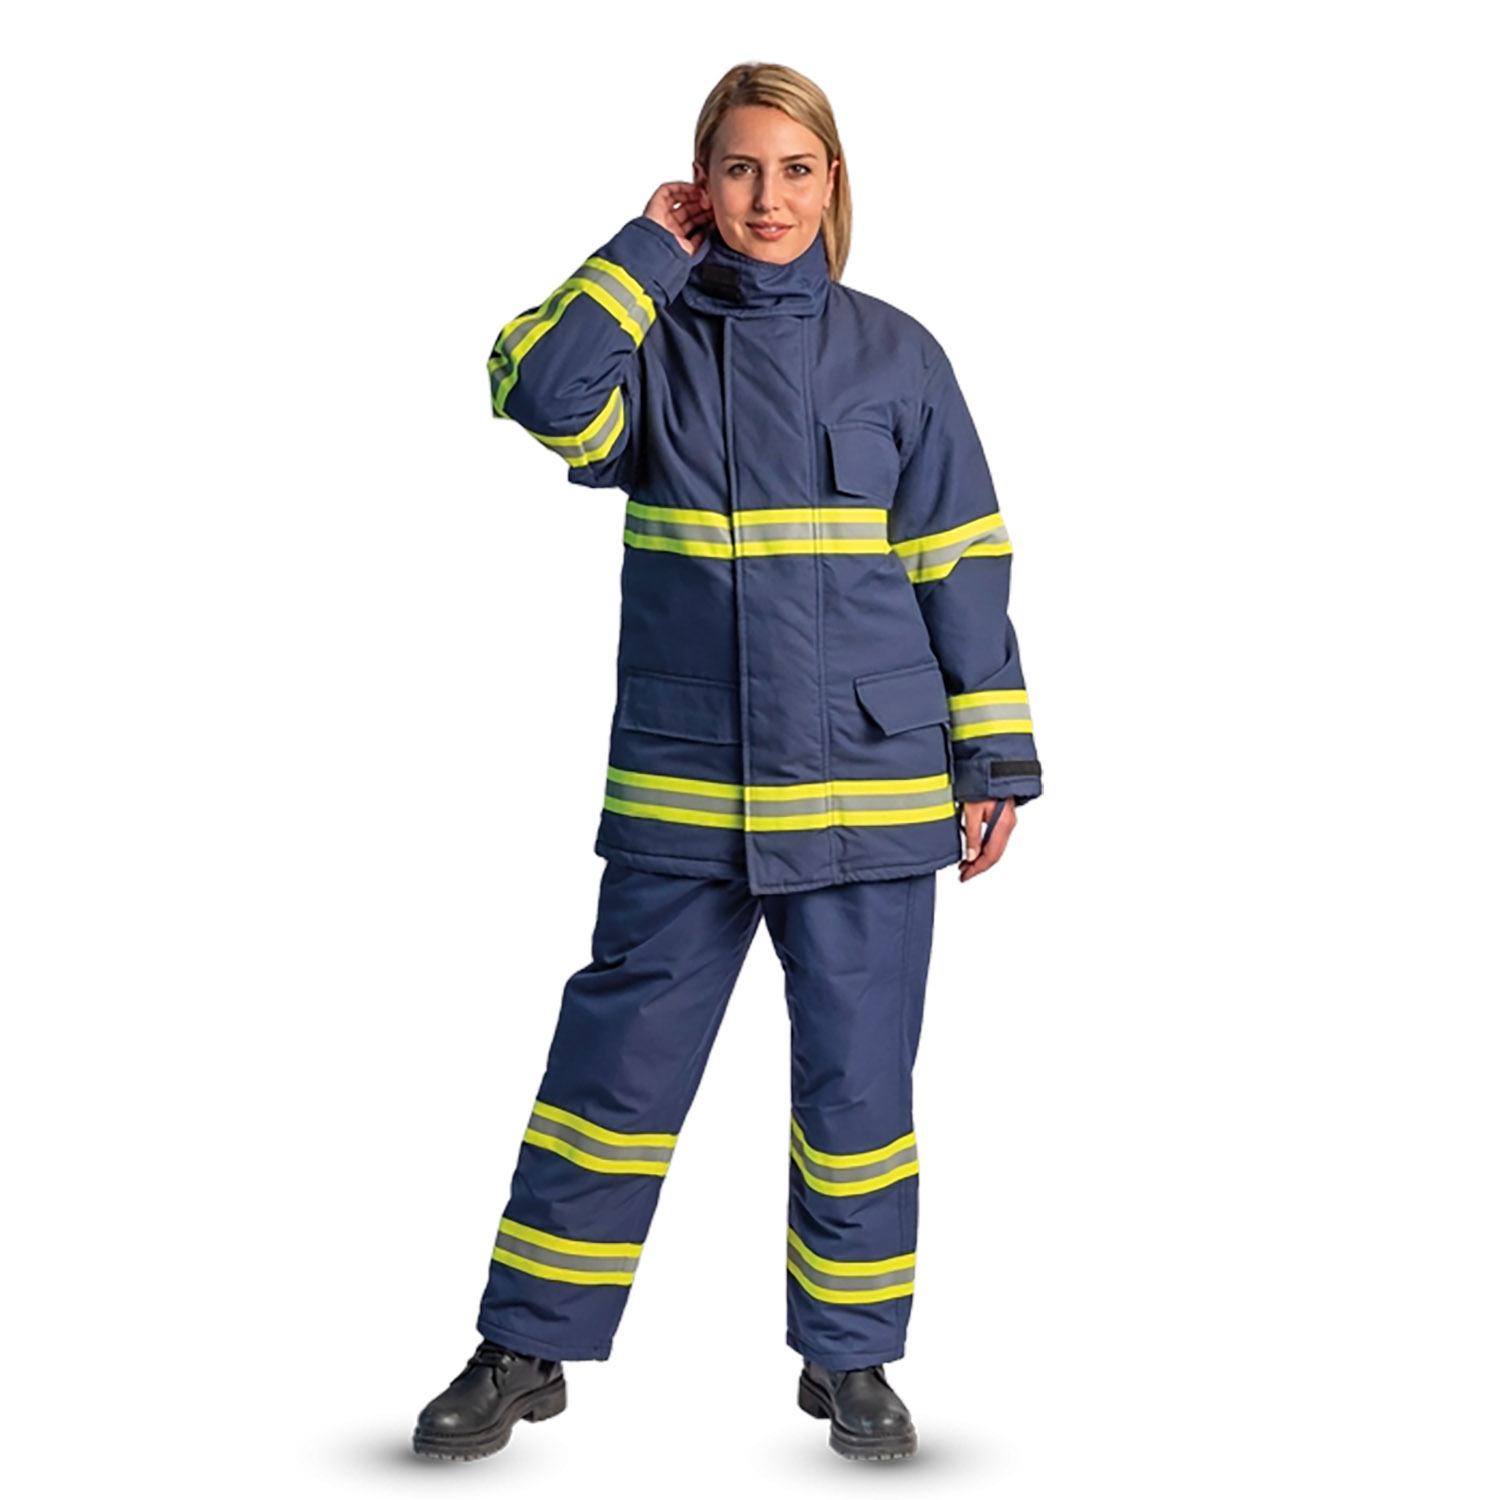 Firefighter Garment Set